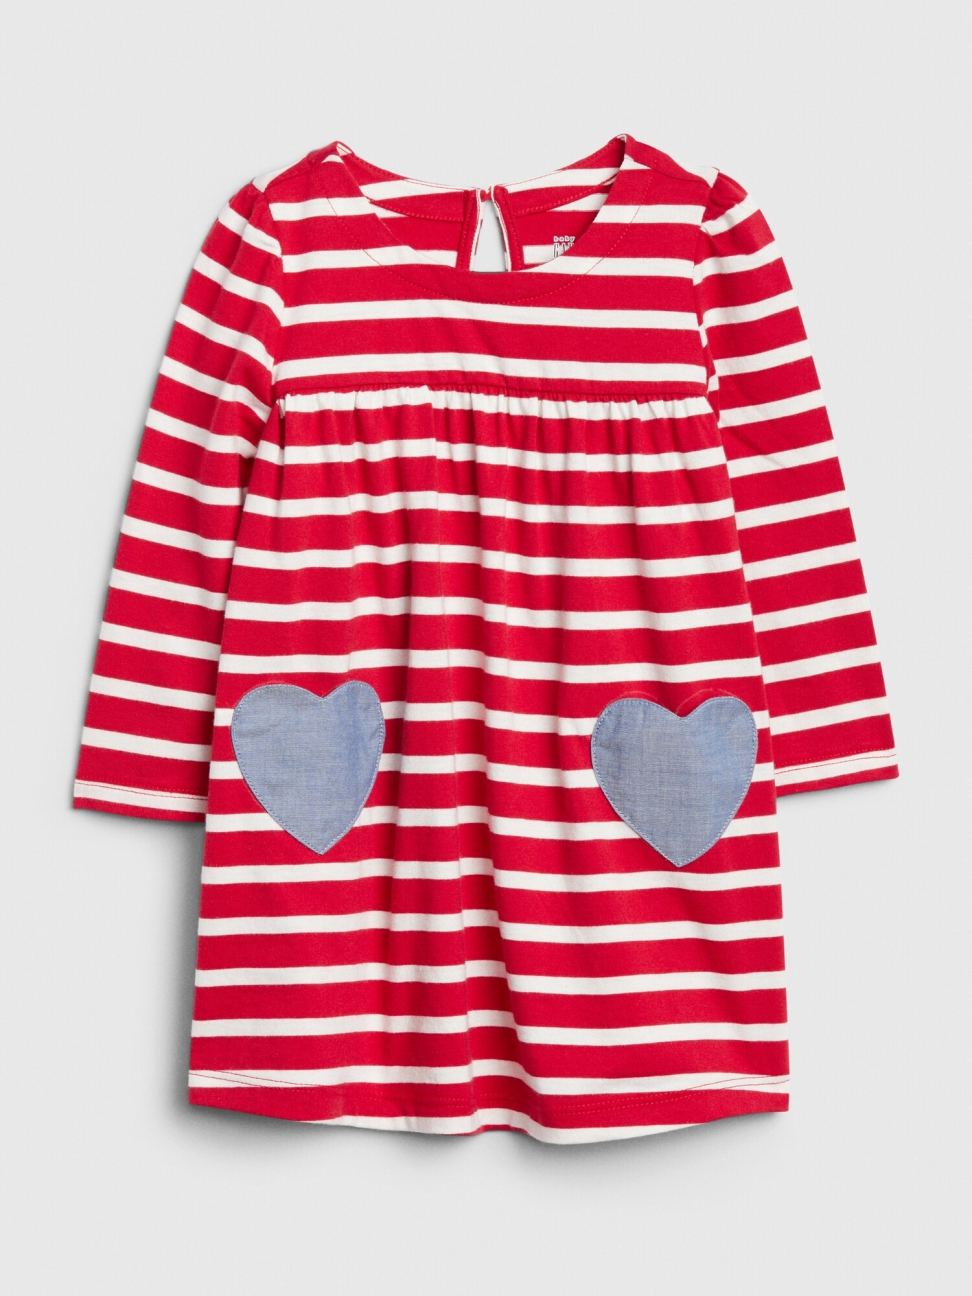 嬰兒裝|甜美風條紋設計圓領洋裝-摩登紅色